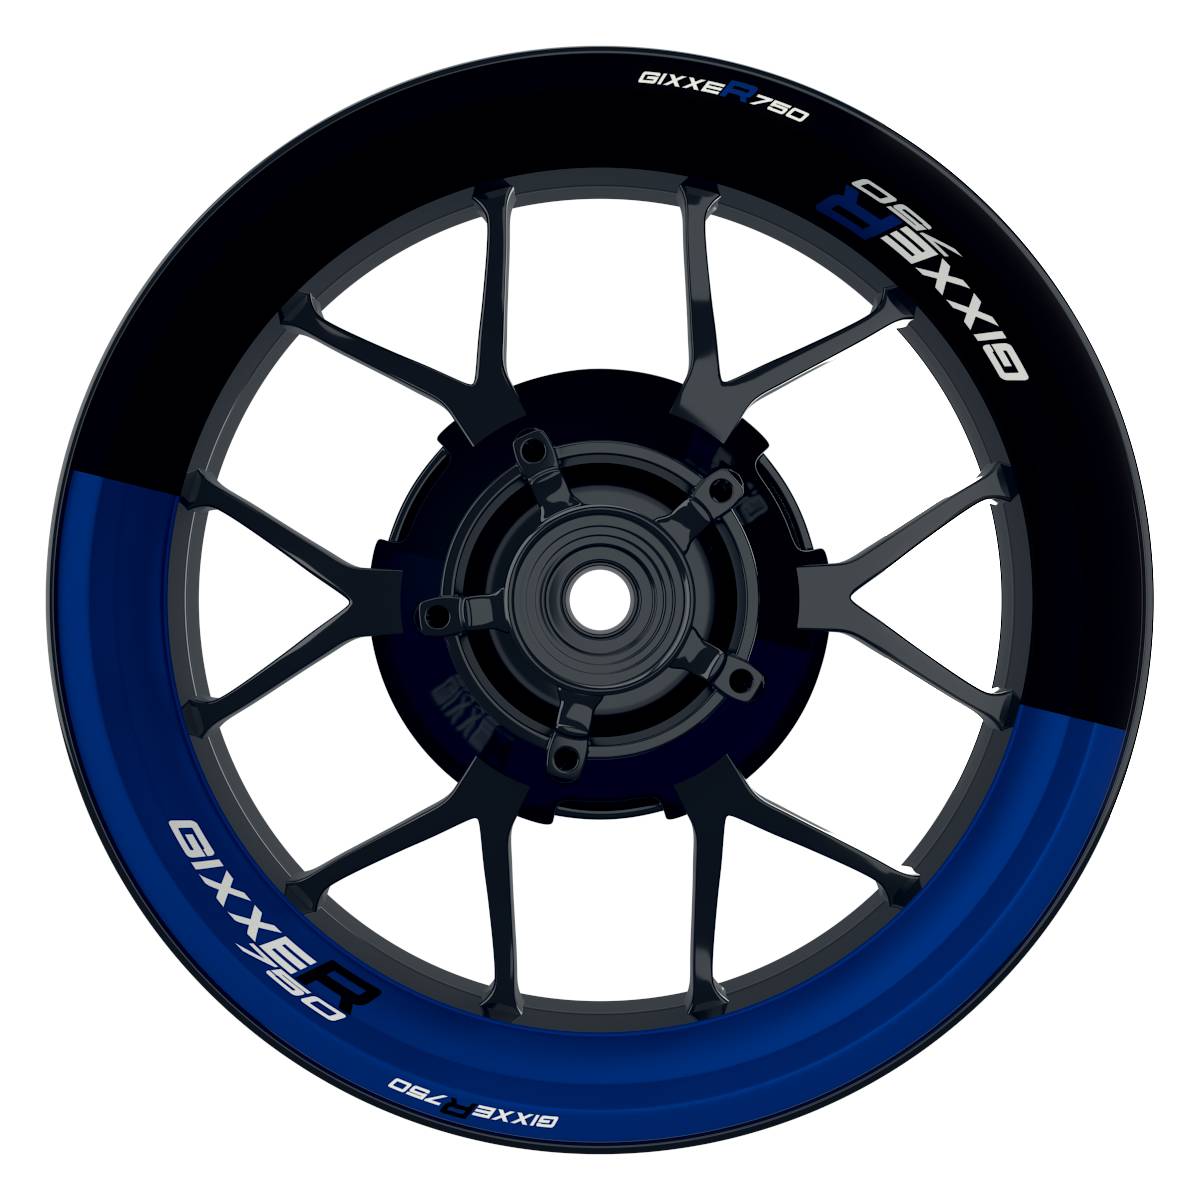 GIXXER750 Halb halb schwarz blau Wheelsticker Felgenaufkleber